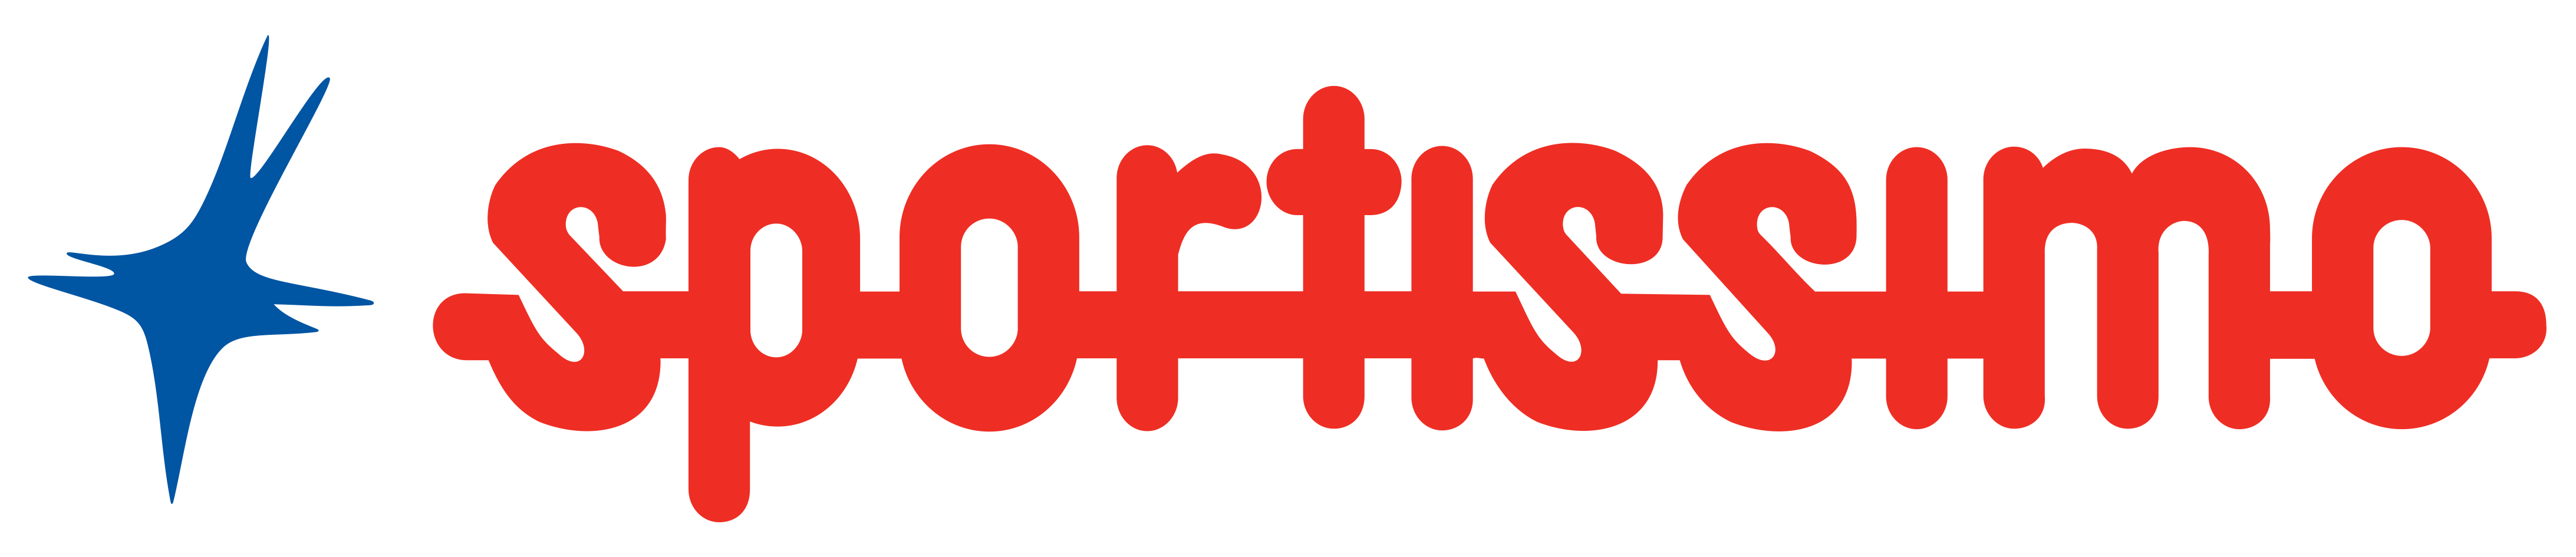 logo Sportissimo